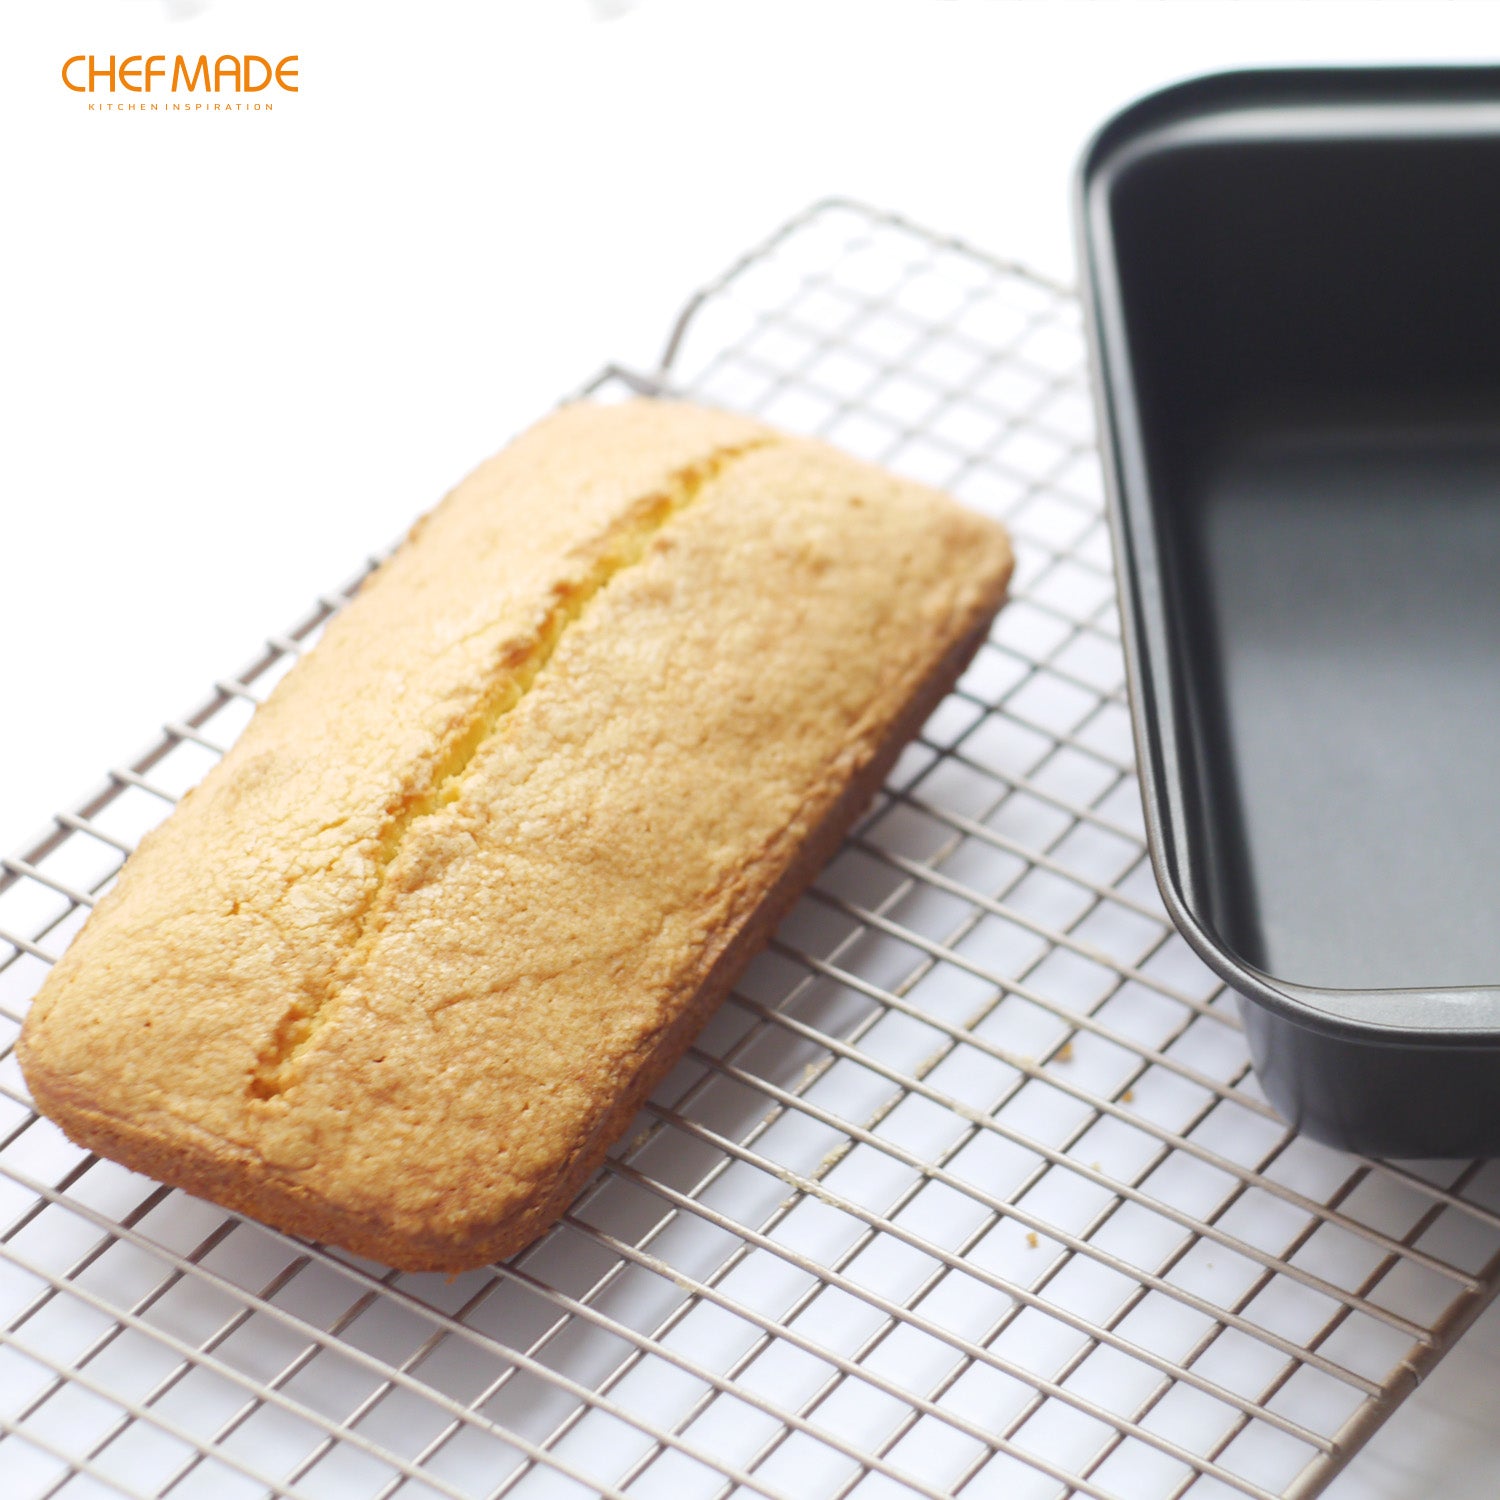 Webake 6 x 3 inch Rectangular Mini Loaf Pan (3 pcs)